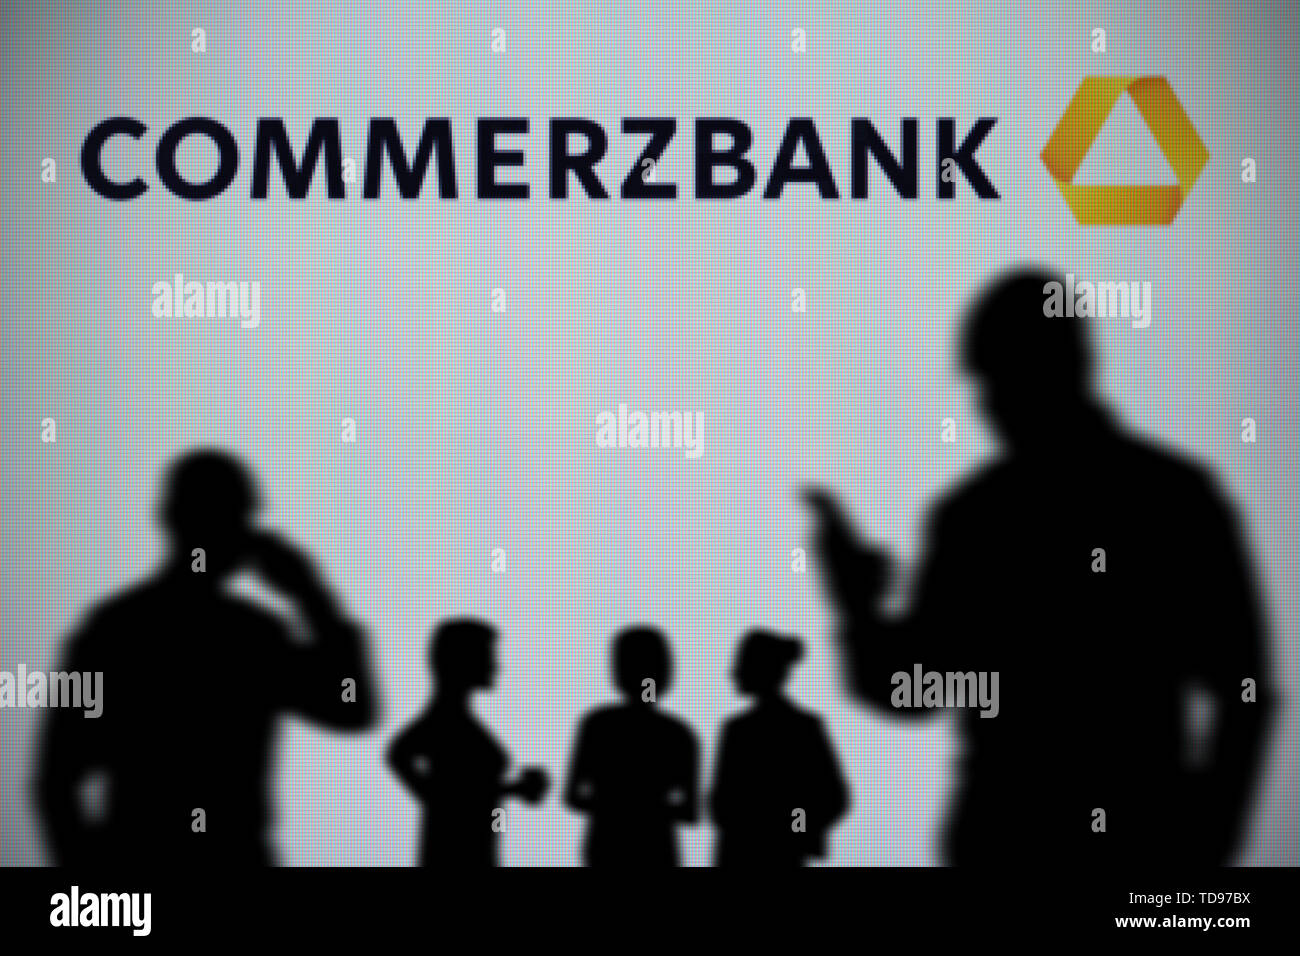 Die Commerzbank-Logo wird auf einer LED-Bildschirm im Hintergrund, während eine Silhouette Person ein Smartphone verwendet im Vordergrund (nur redaktionelle Nutzung) Stockfoto